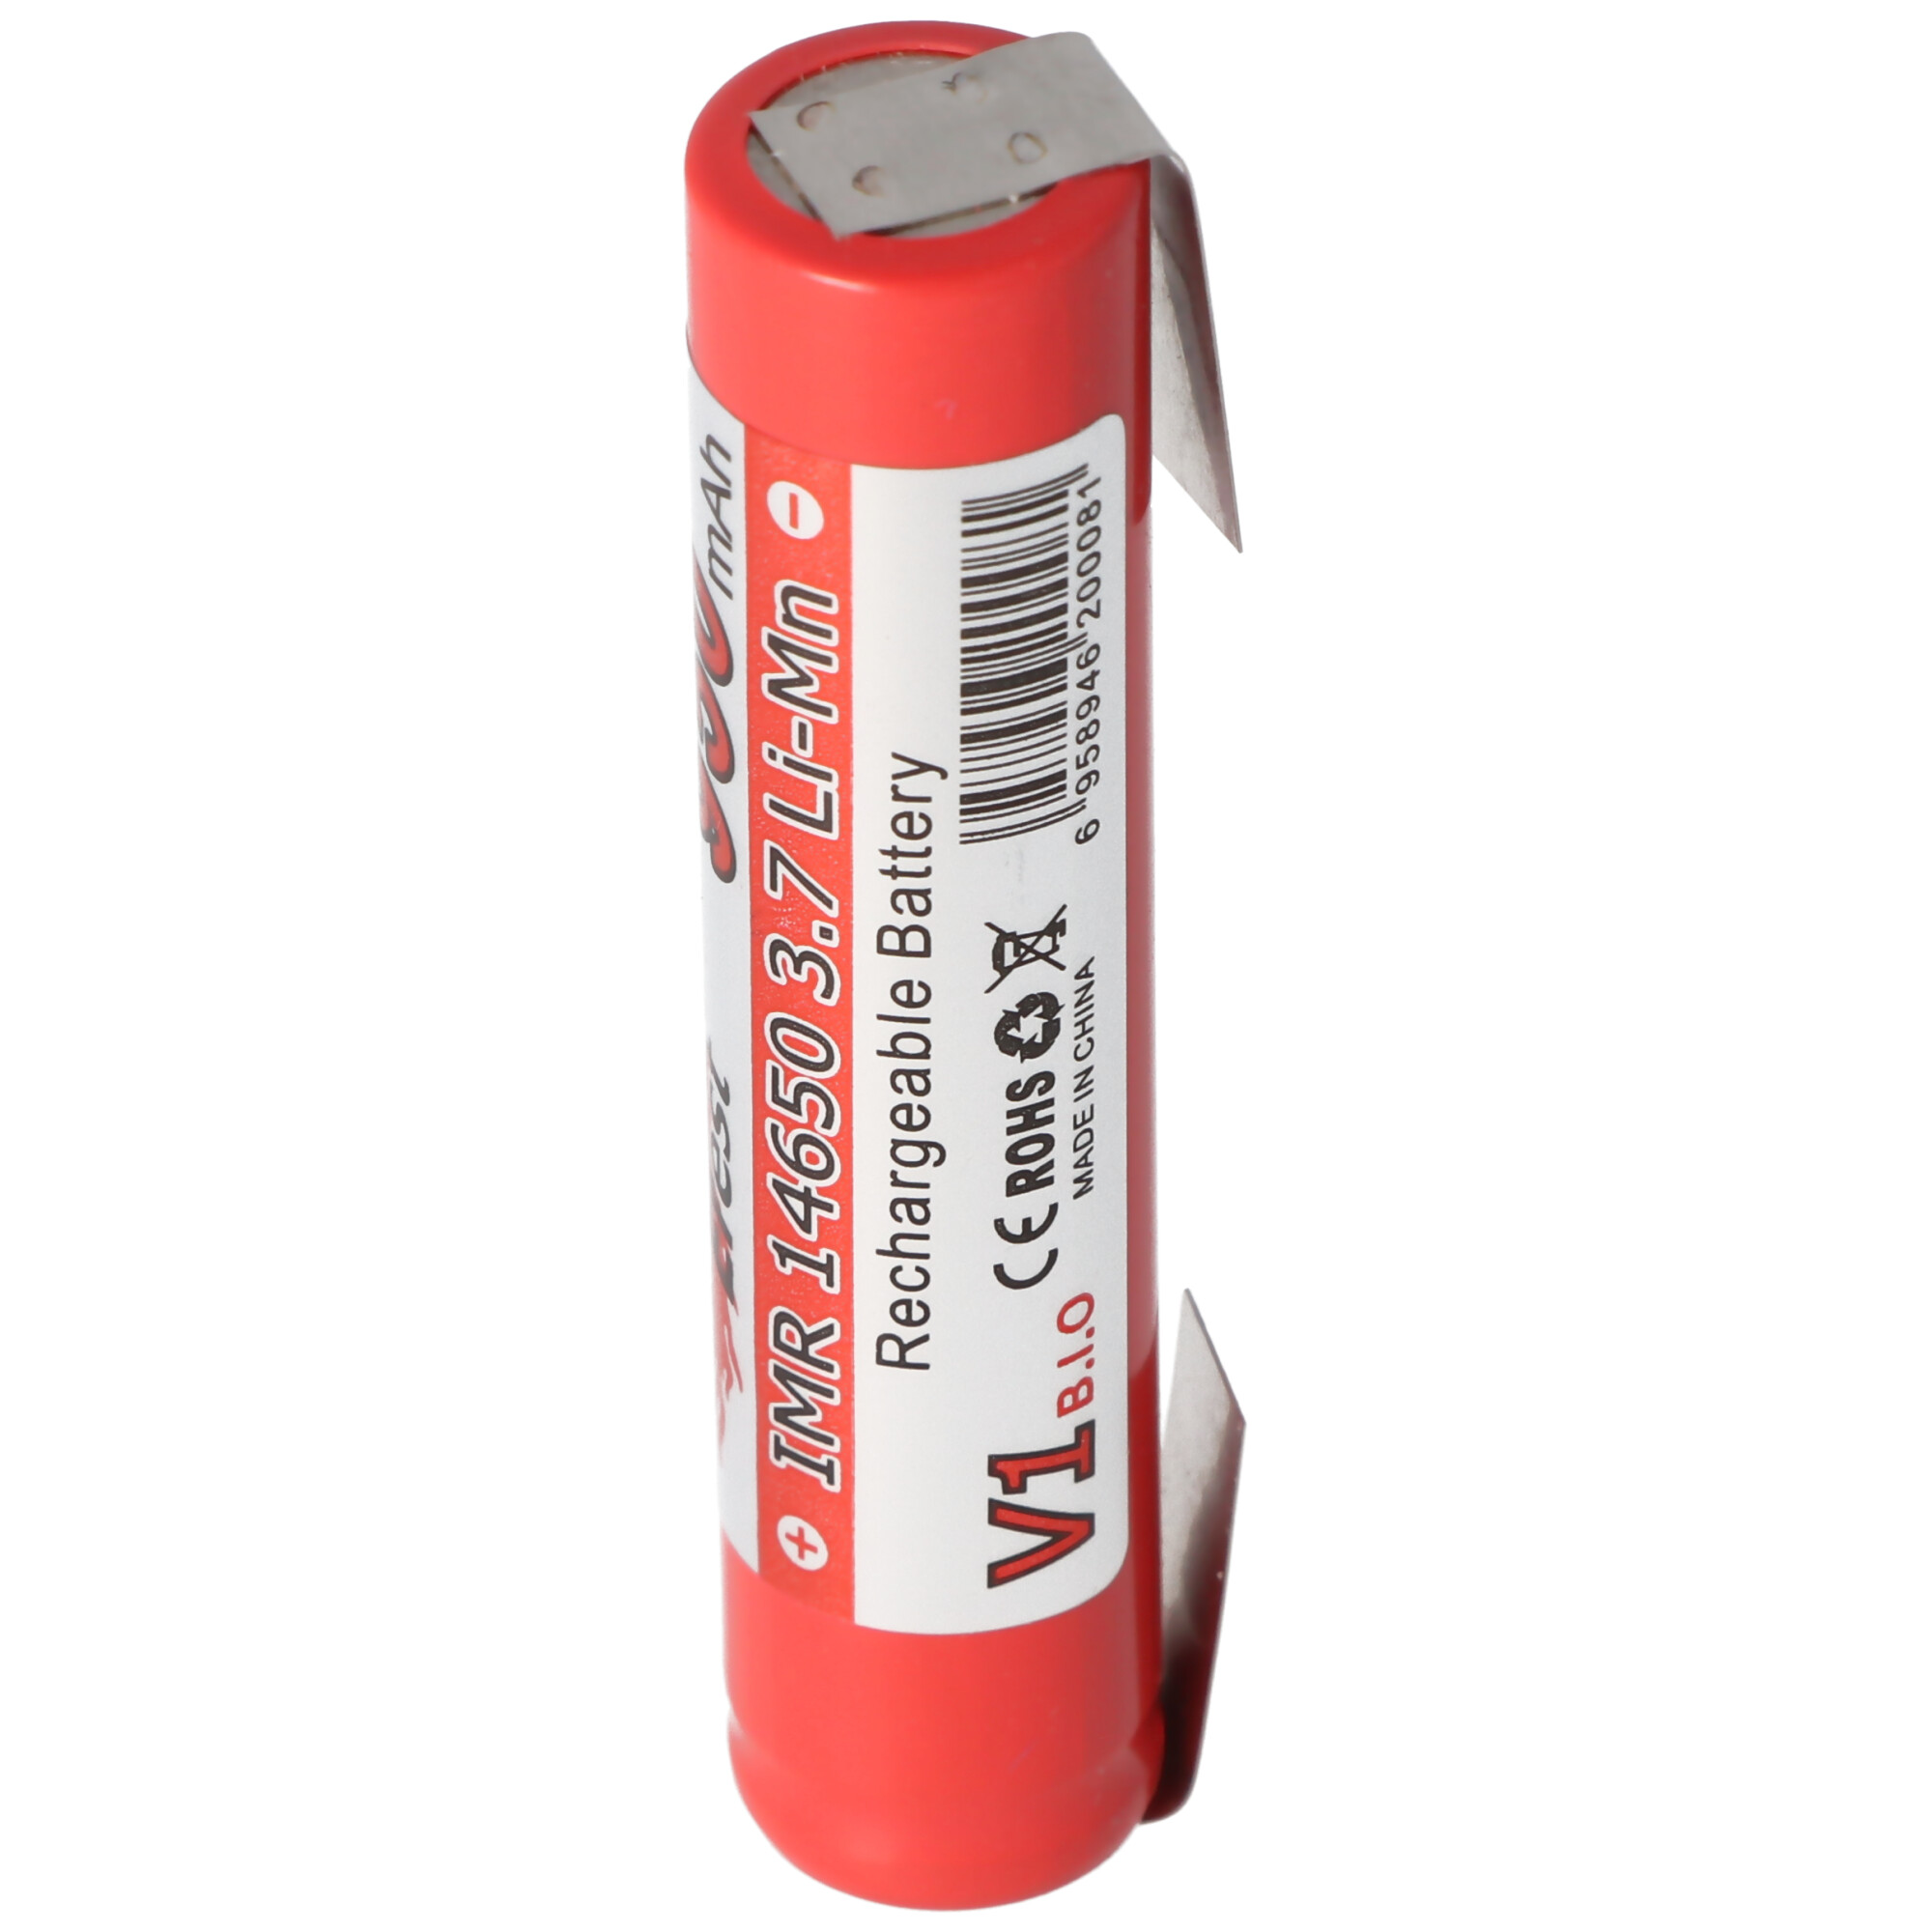 IMR14650 3,7 Volt Lithium Batterie mit Lötfahnen U-Form 65,1x14mm